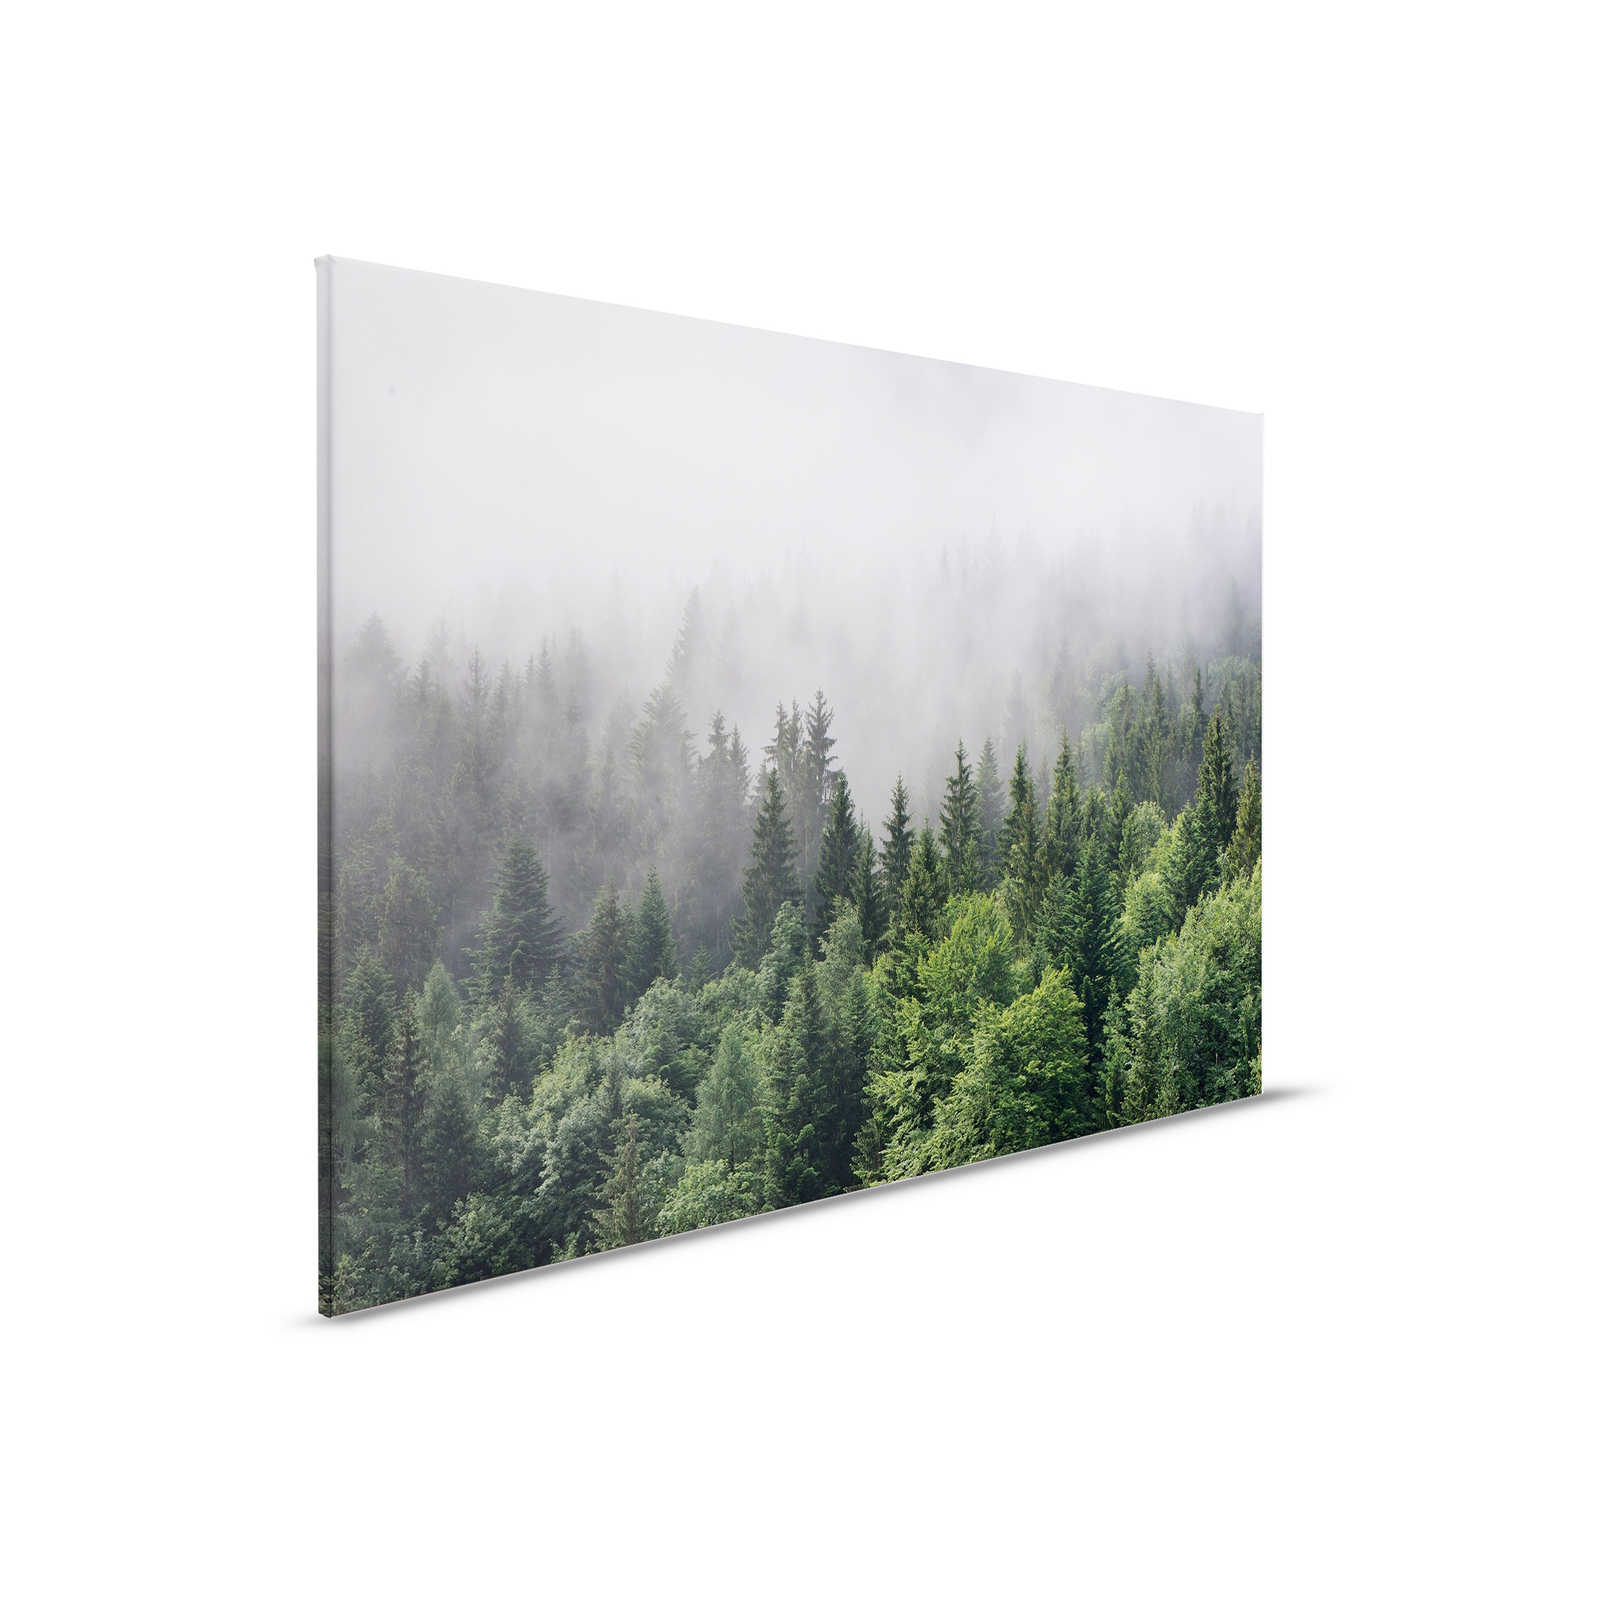         Leinwand mit Wald von oben an einem nebeligen Tag – 0,90 m x 0,60 m
    